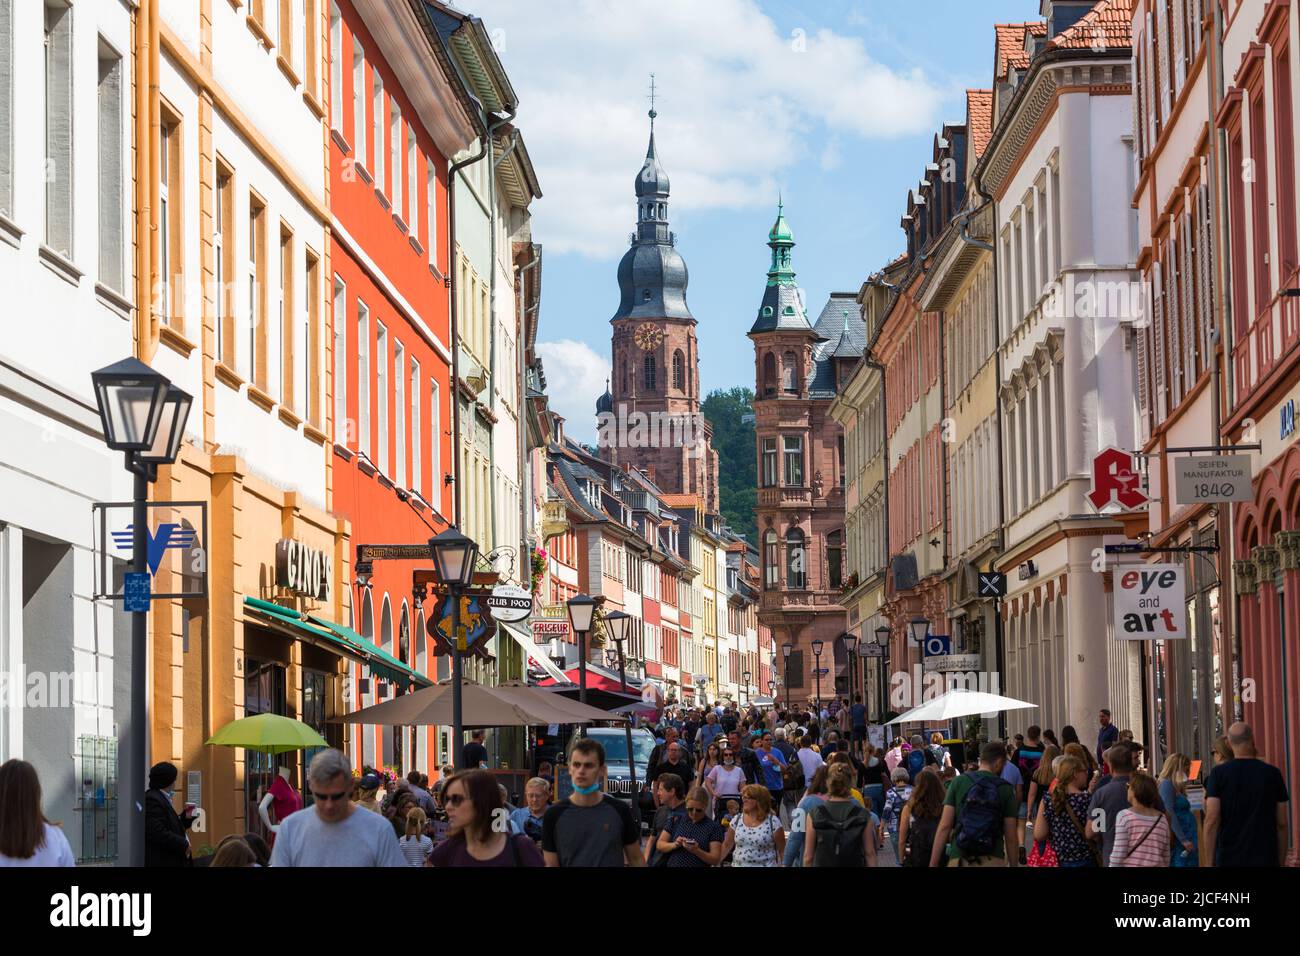 Heidelberg, Alemania - 25 de agosto de 2021: Vista a lo largo de la zona peatonal de Heidelberg. En el fondo el campanario de la Iglesia del Espíritu Santo. Foto de stock